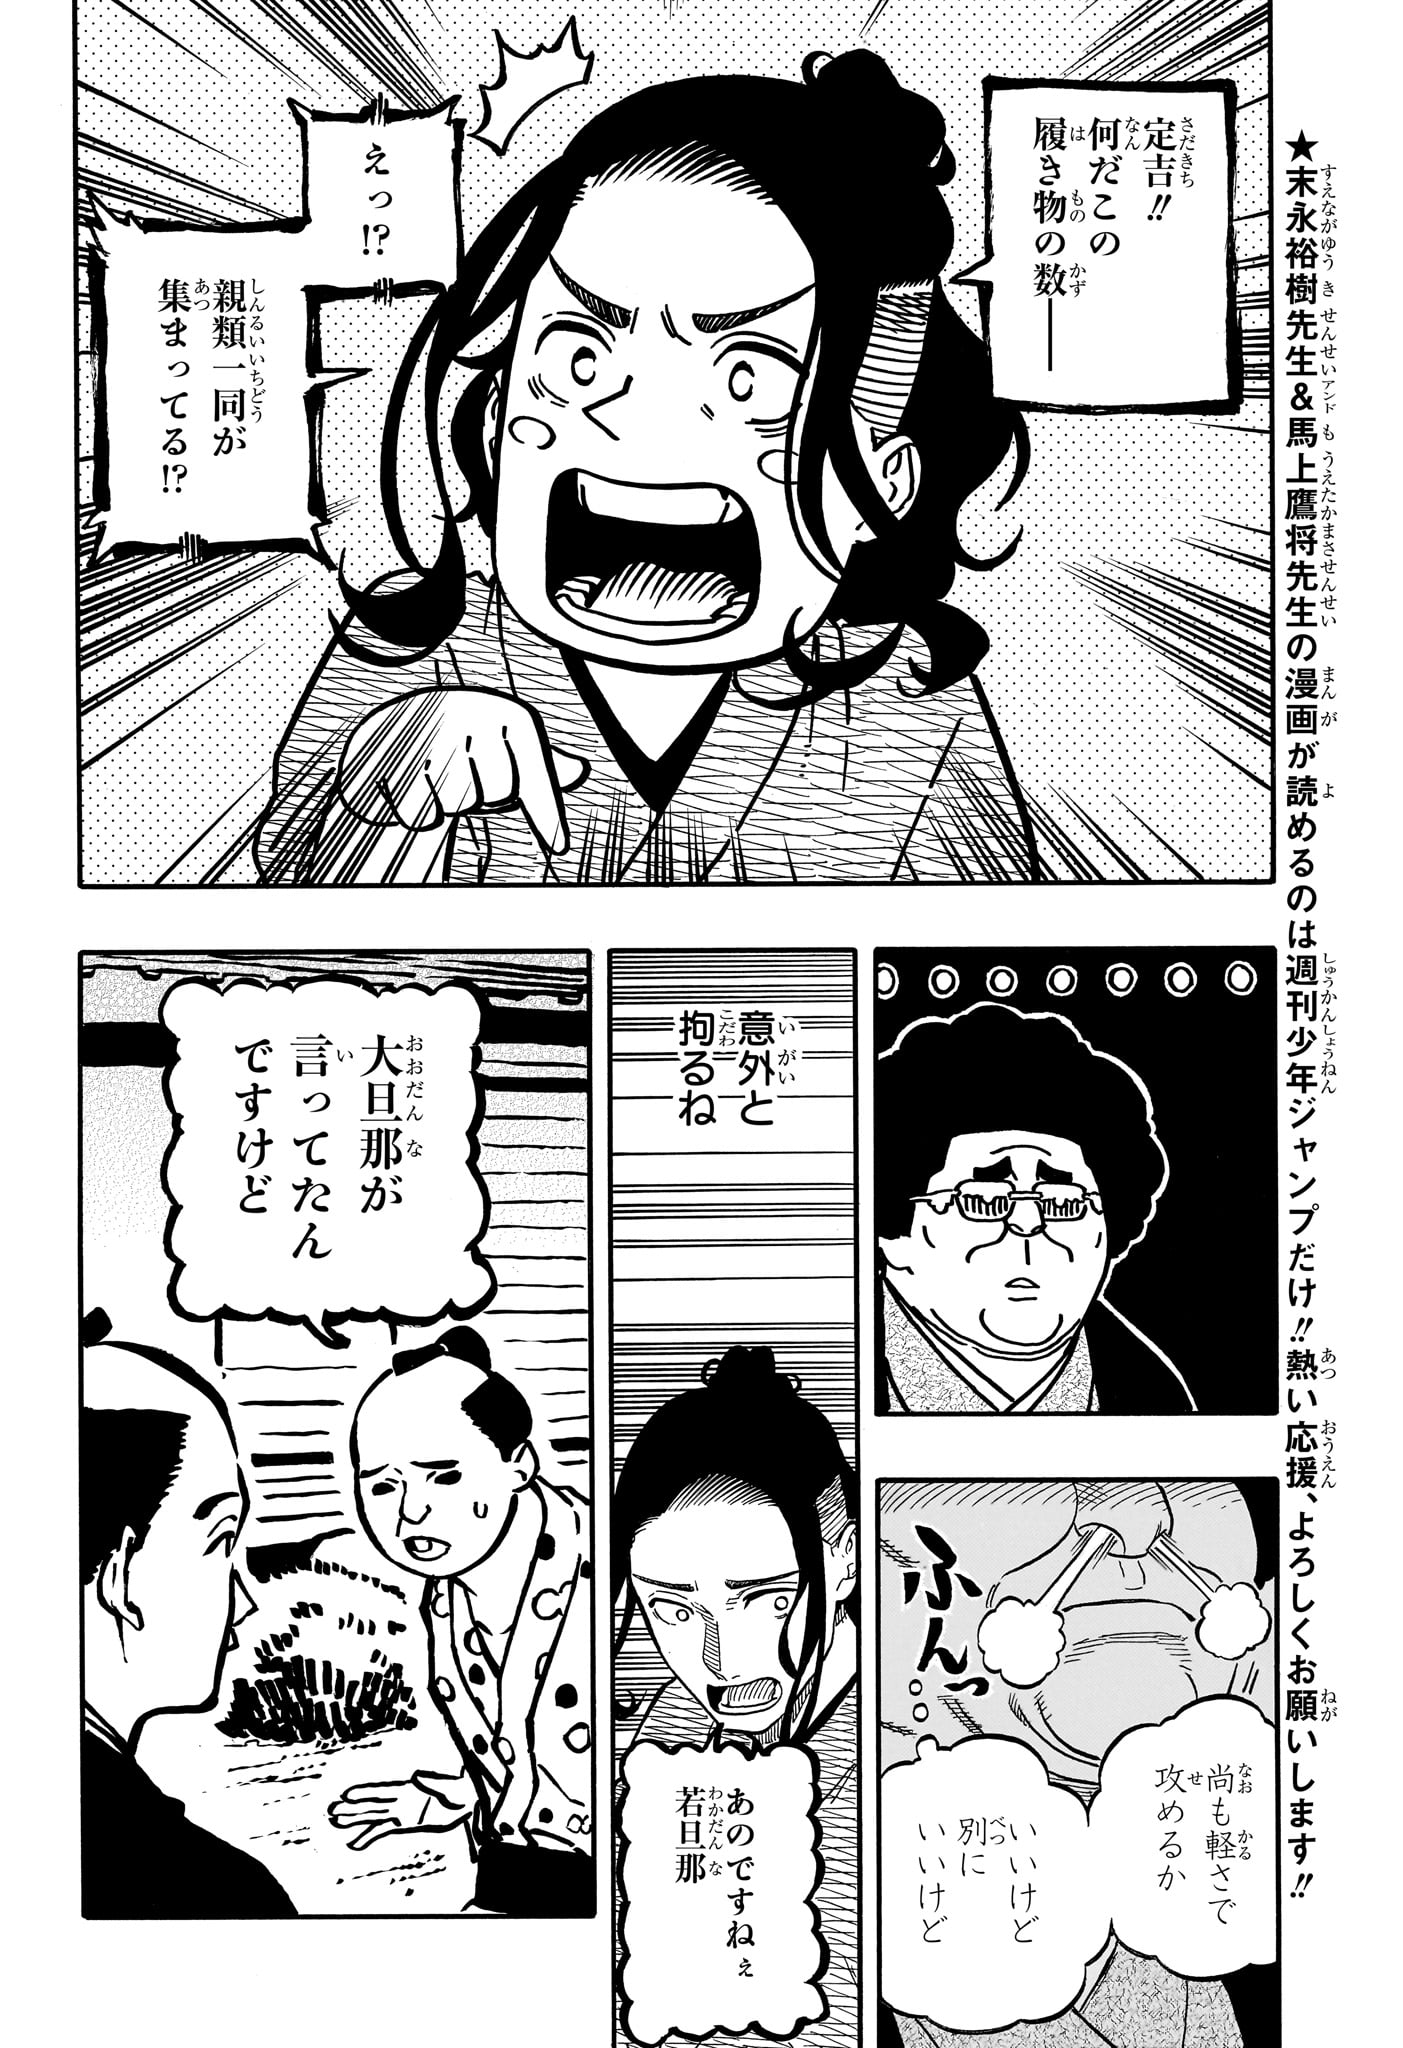 Akane-Banashi - Chapter 112 - Page 4